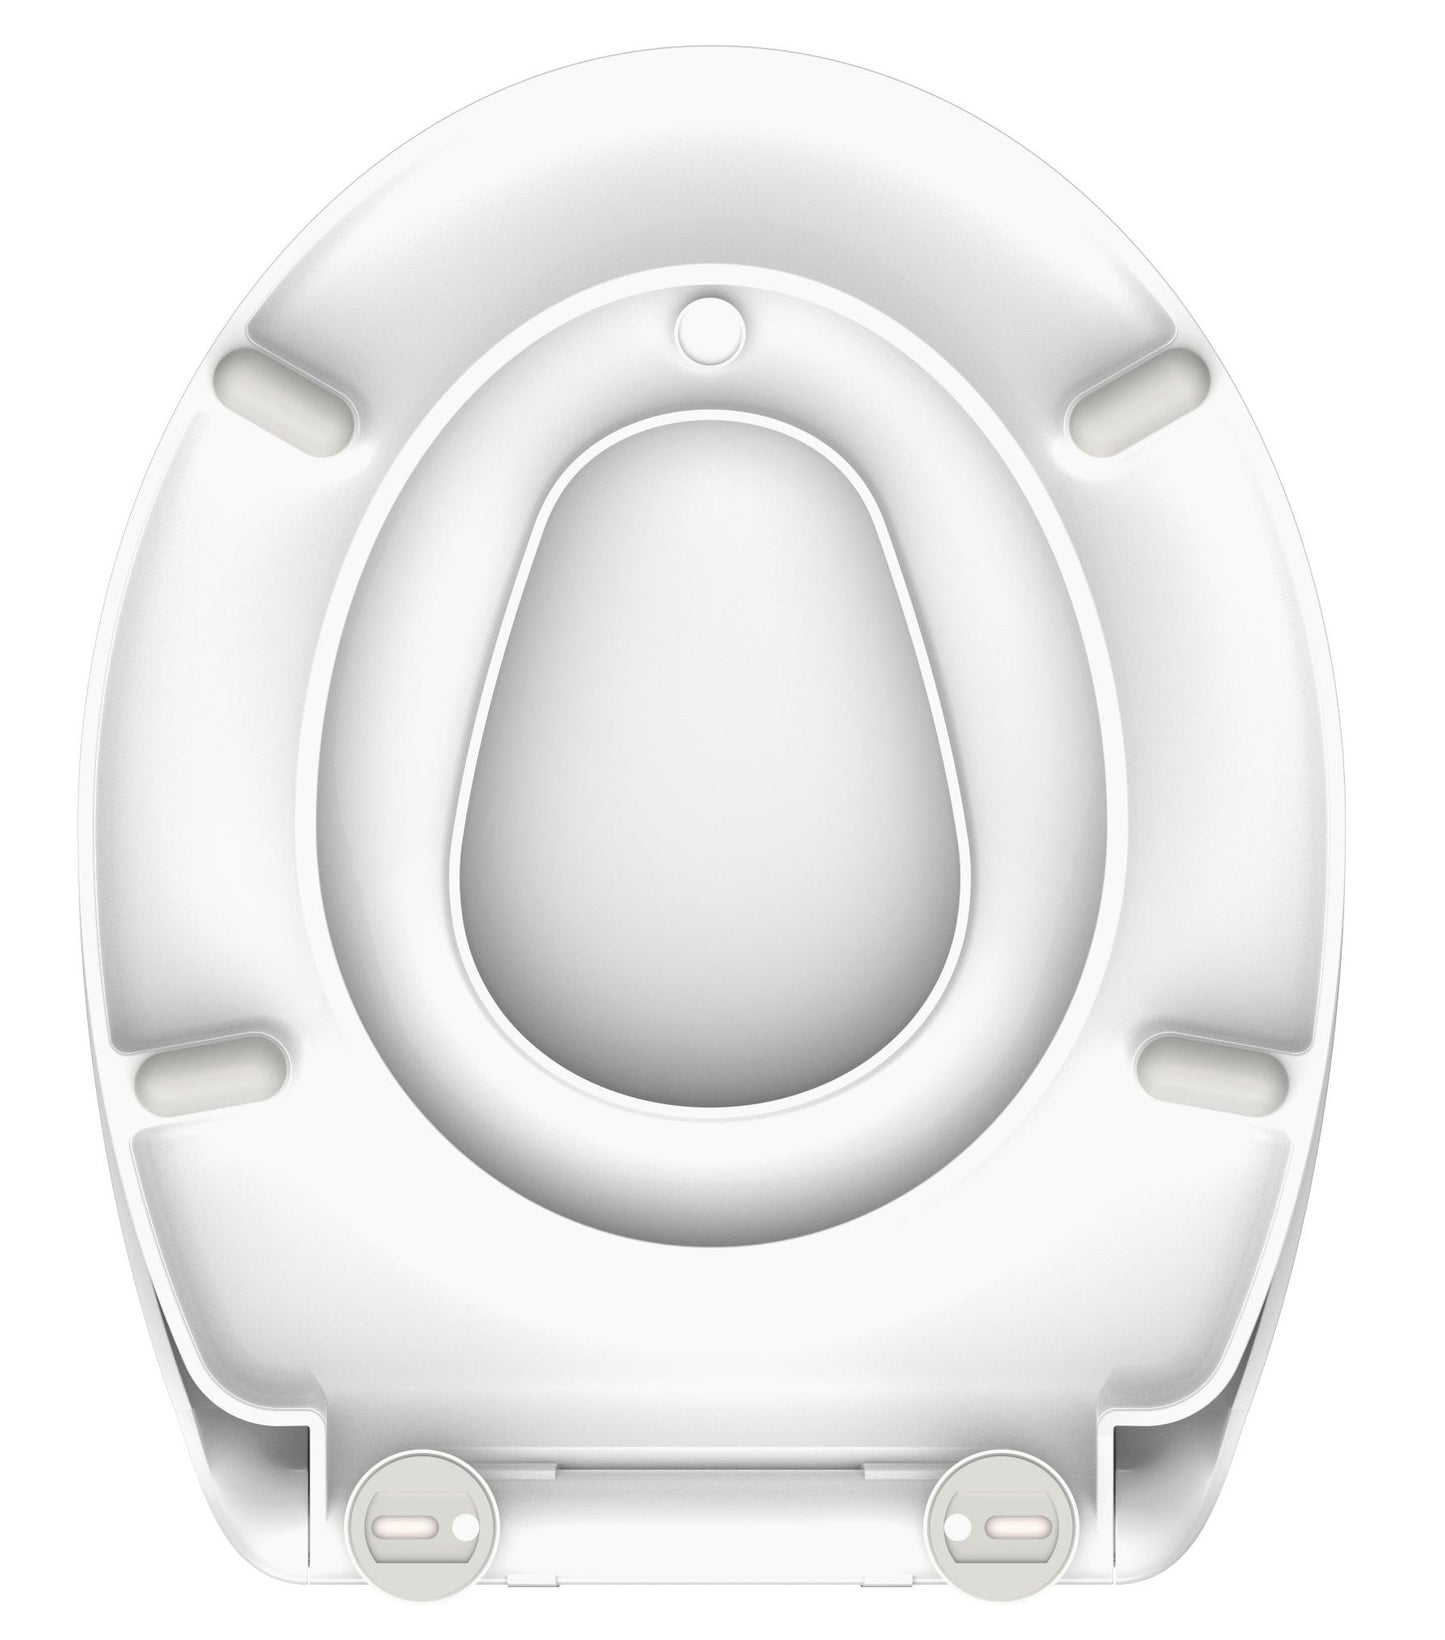 Vit toalettsits universal anpassad för barn - BÄST. CC-mått: 90-190mm Längd: 451mm Bredd: 371mm.